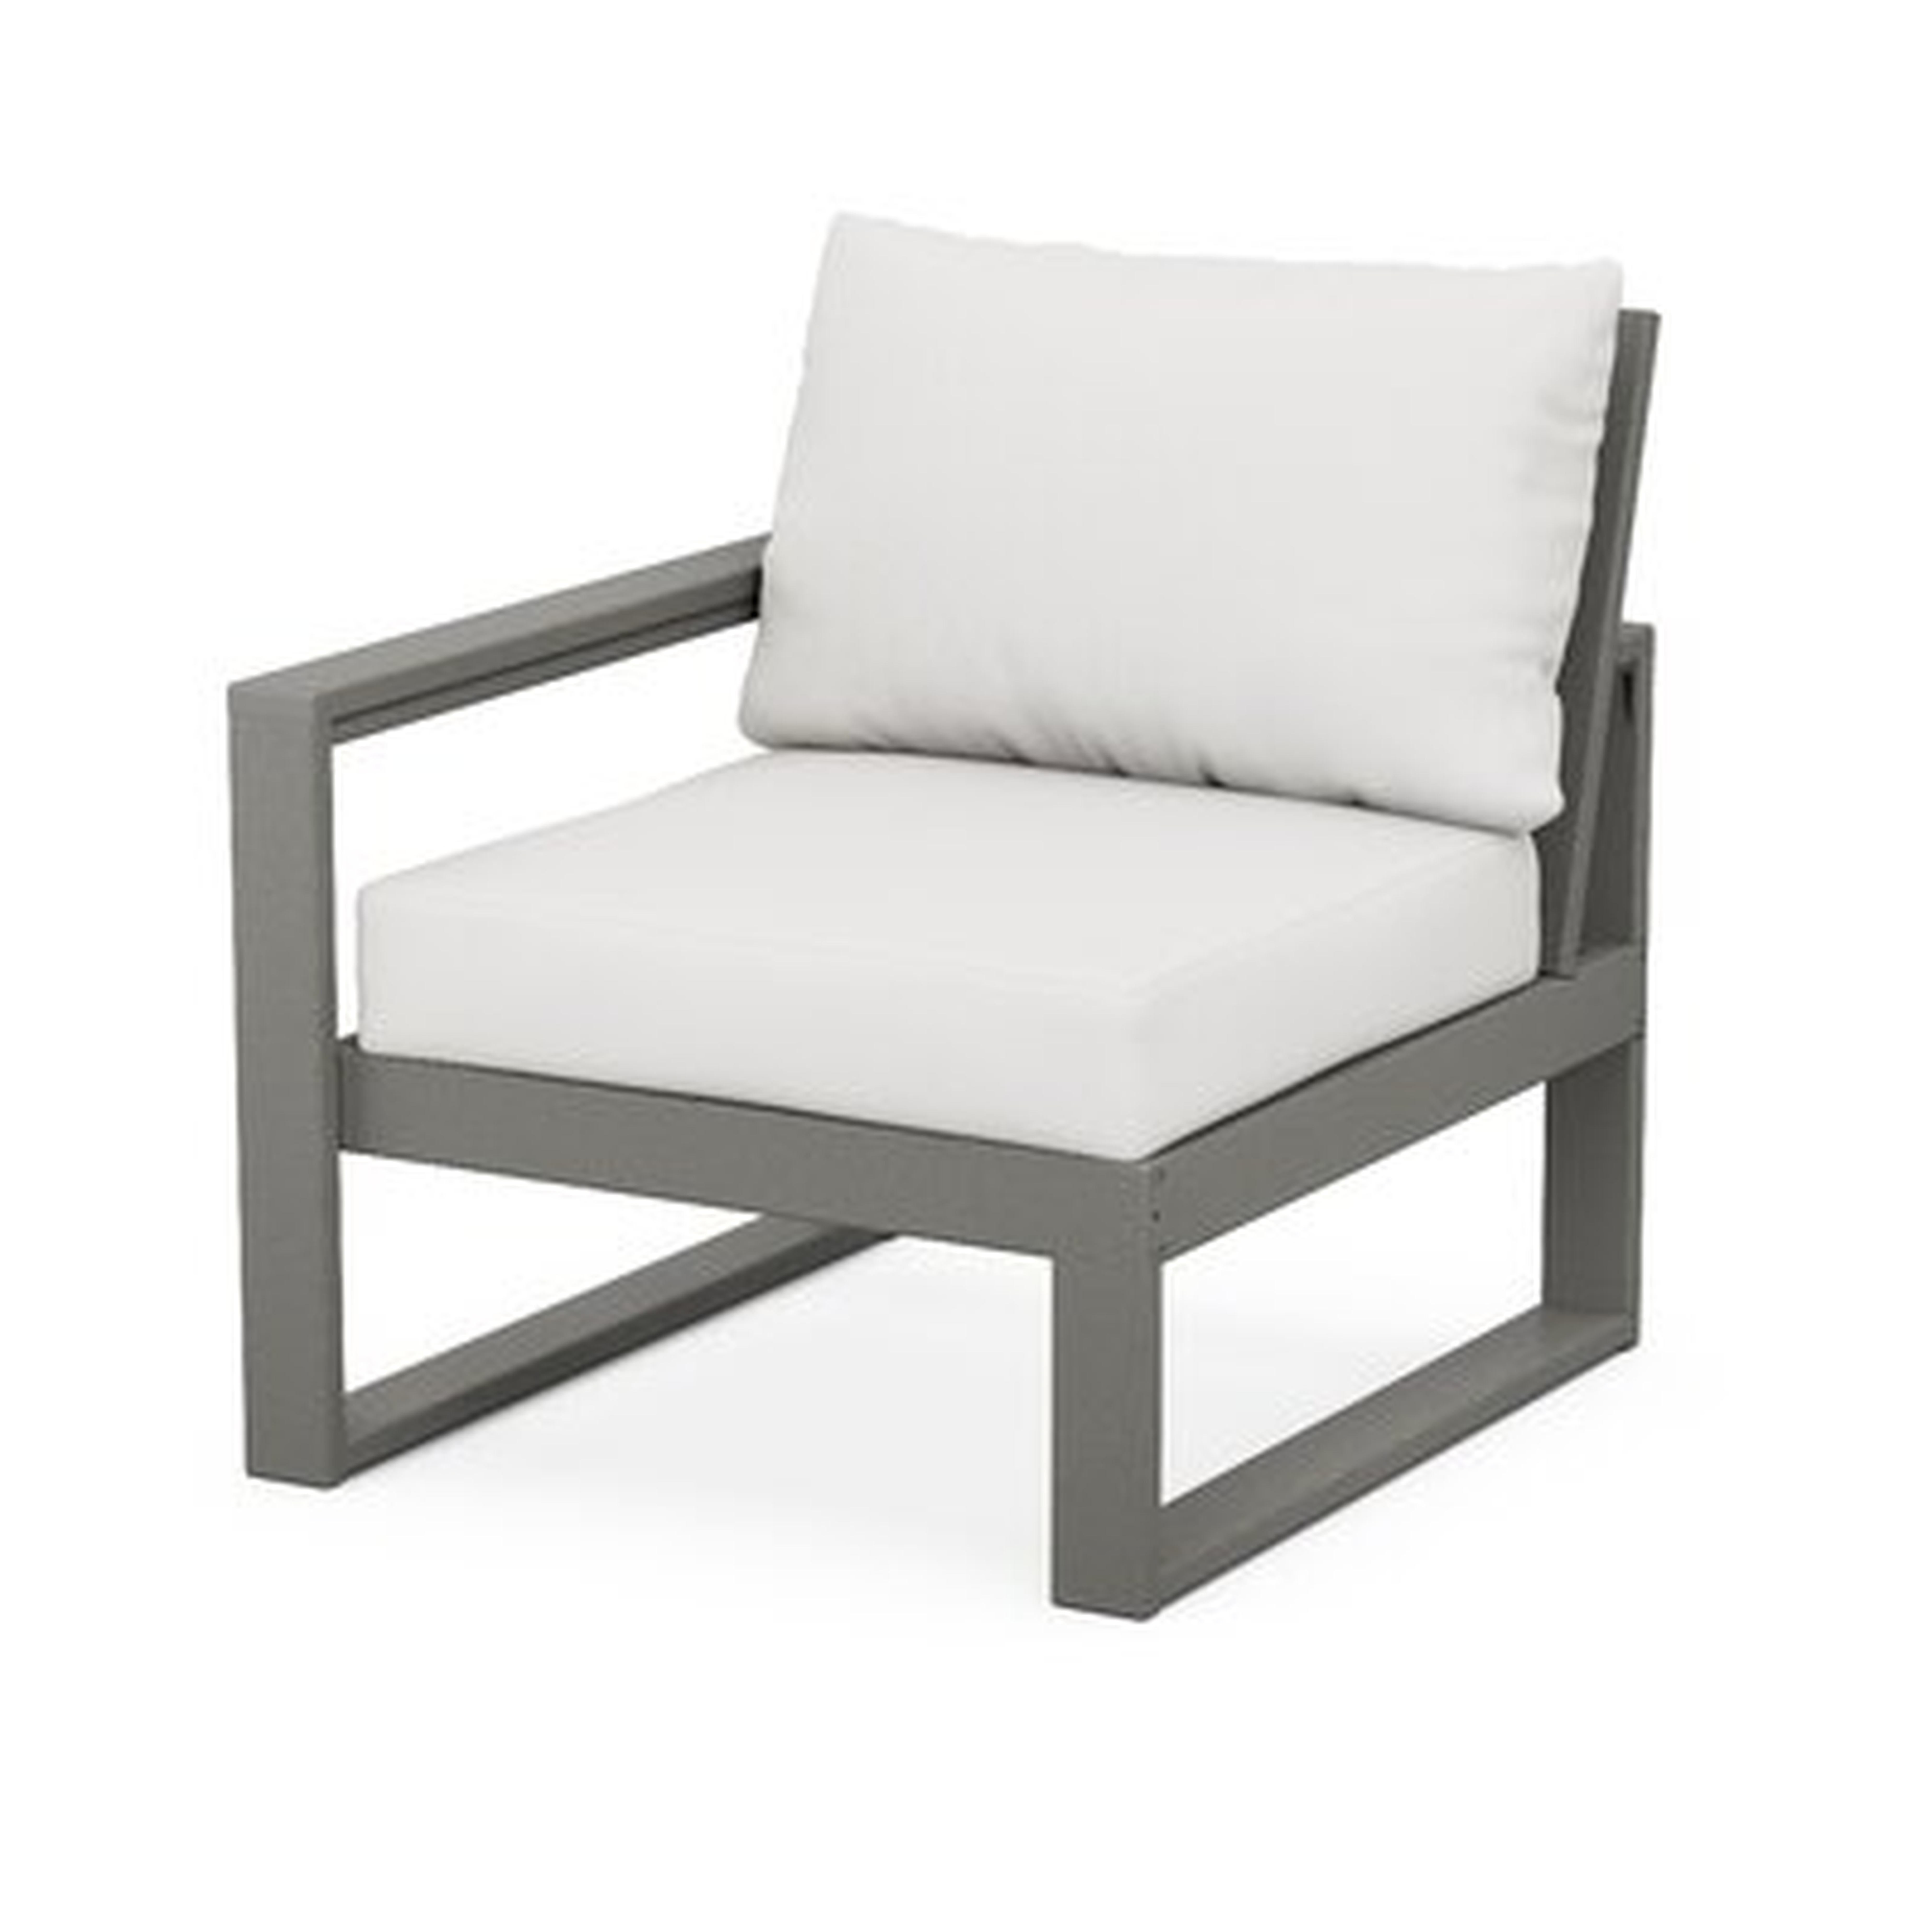 Edge Modular Patio Chair - AllModern